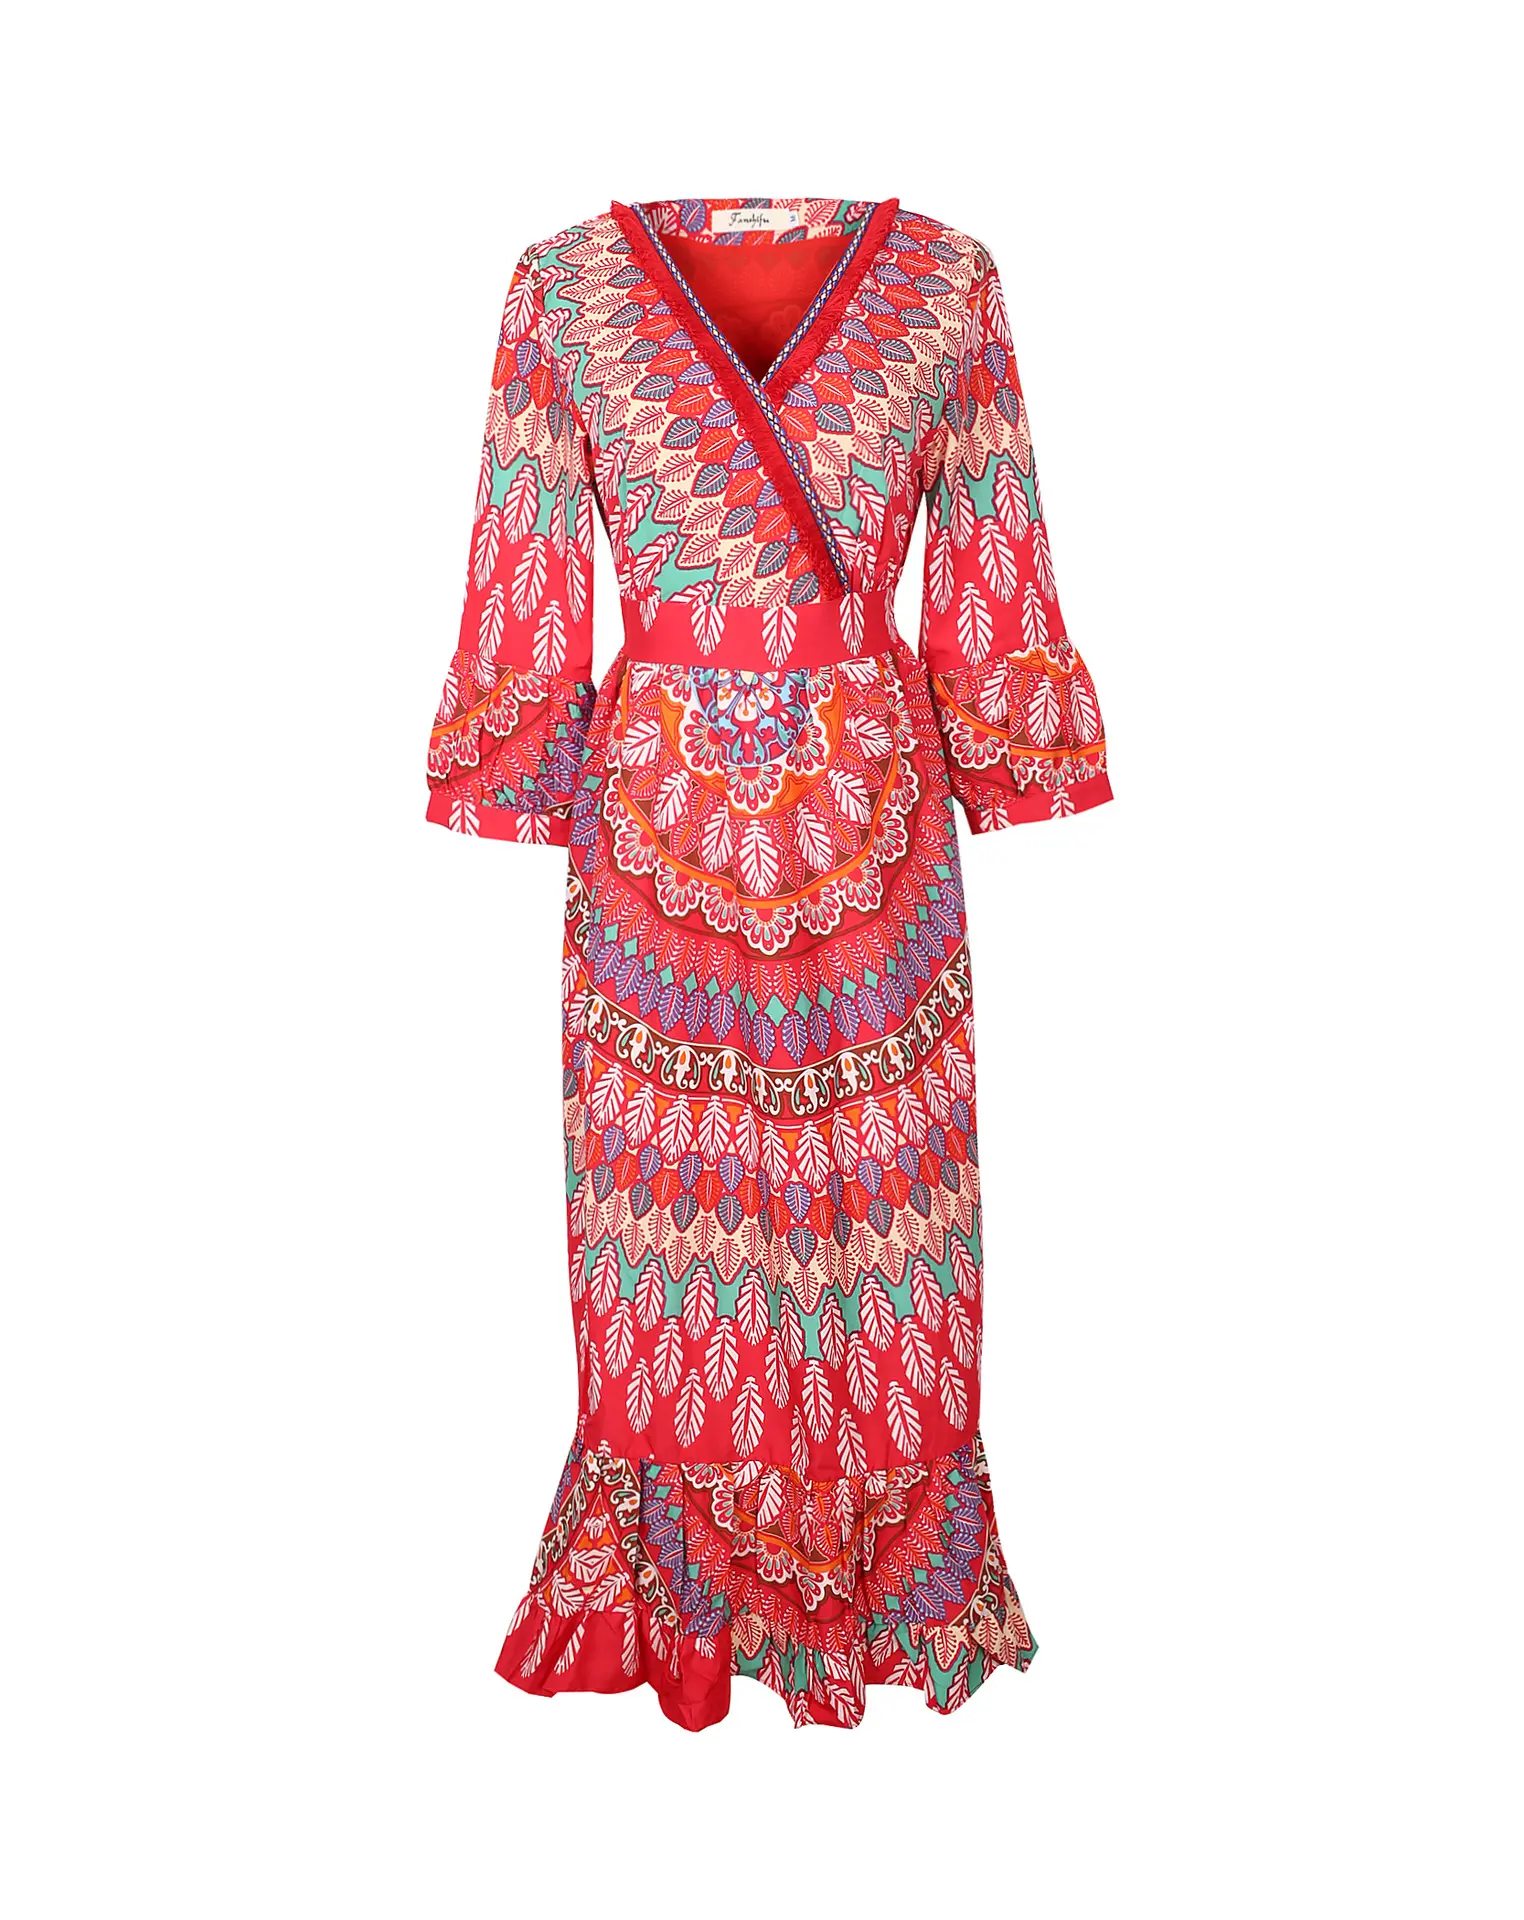 เดรสโบโฮสำหรับผู้หญิง,ชุดกระโปรงชายหาดรีสอร์ทริมทะเลชุดเดรสผู้หญิงพิมพ์ลายแบบขอบคอวีสีแดงฤดูร้อน